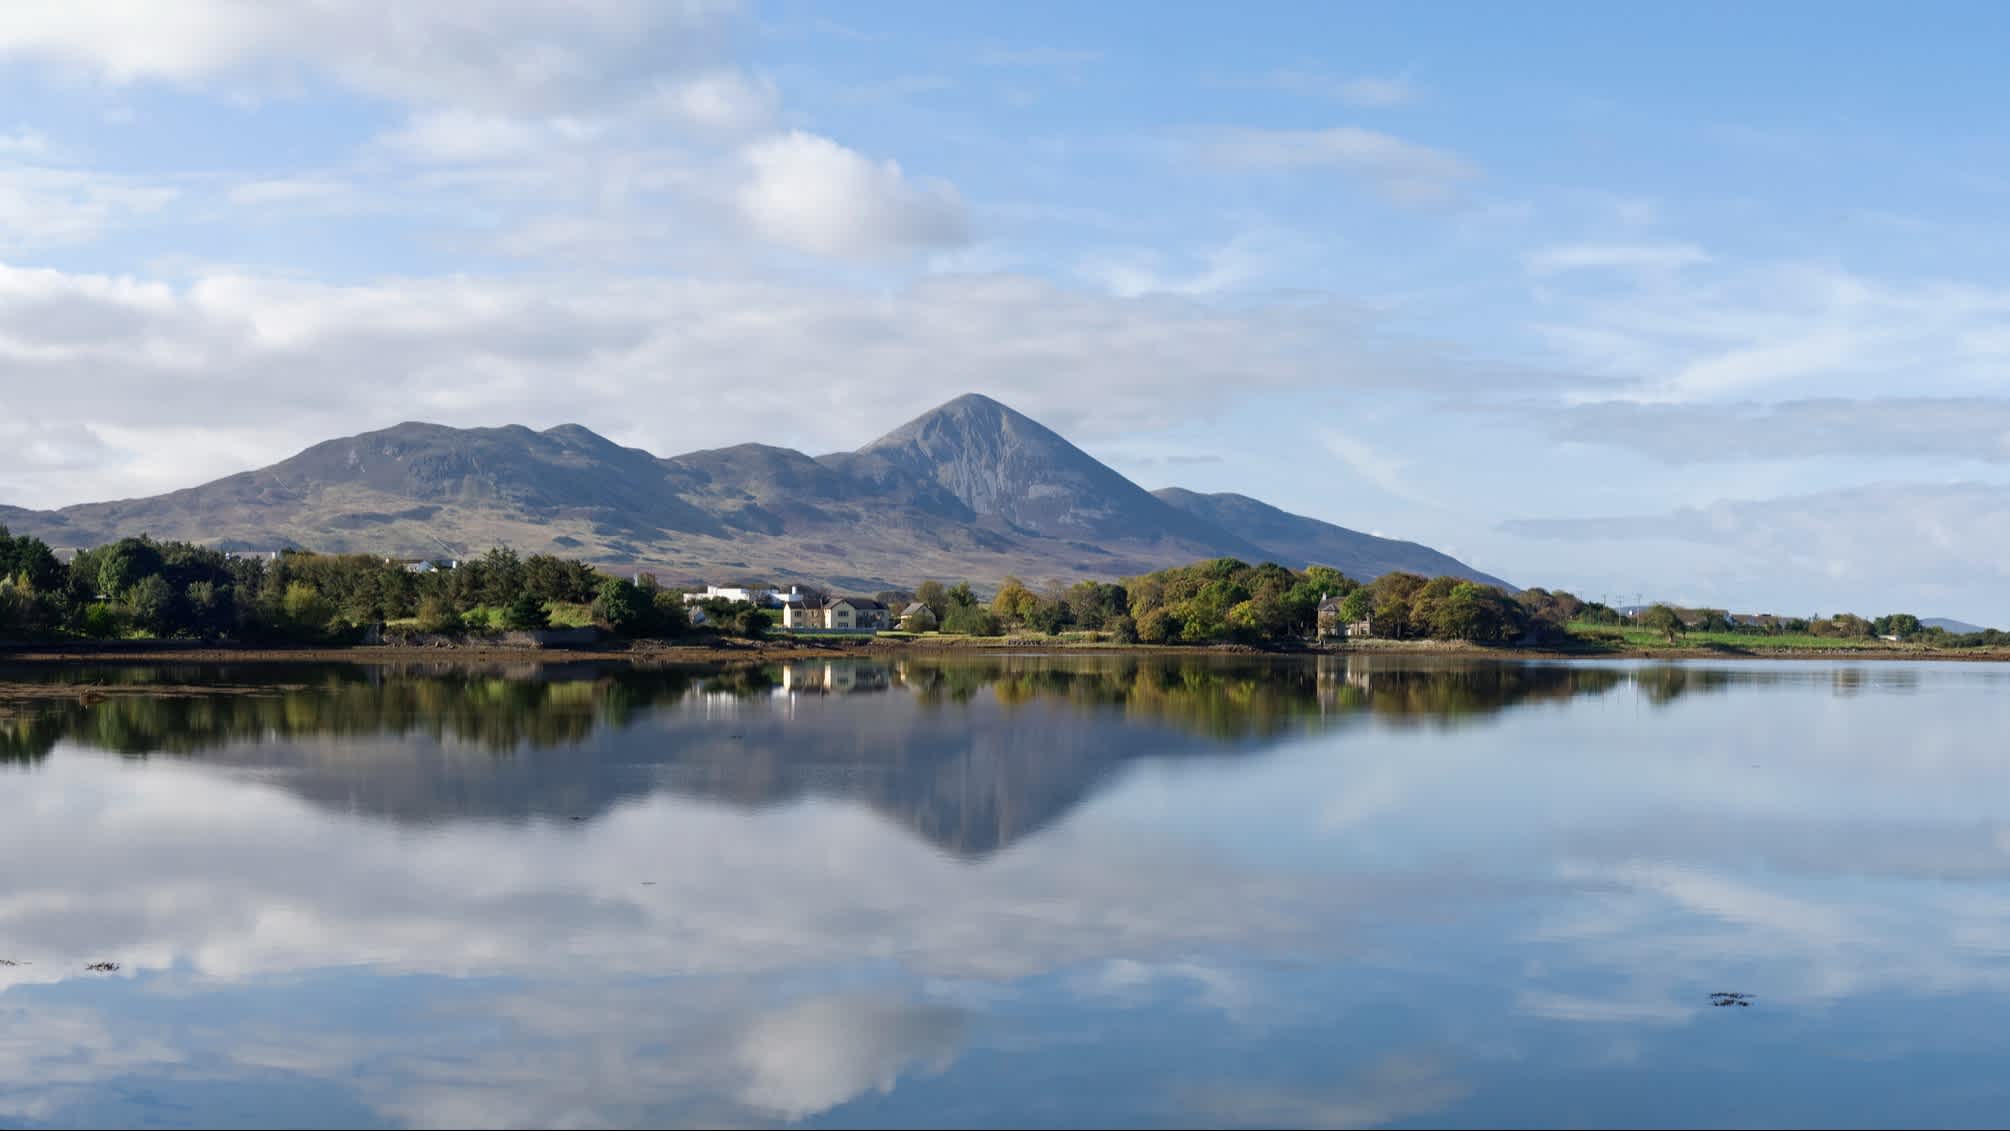 Mount Croagh Patrick mit der See in Vordergrund, Westport, County Mayo, Irland.

